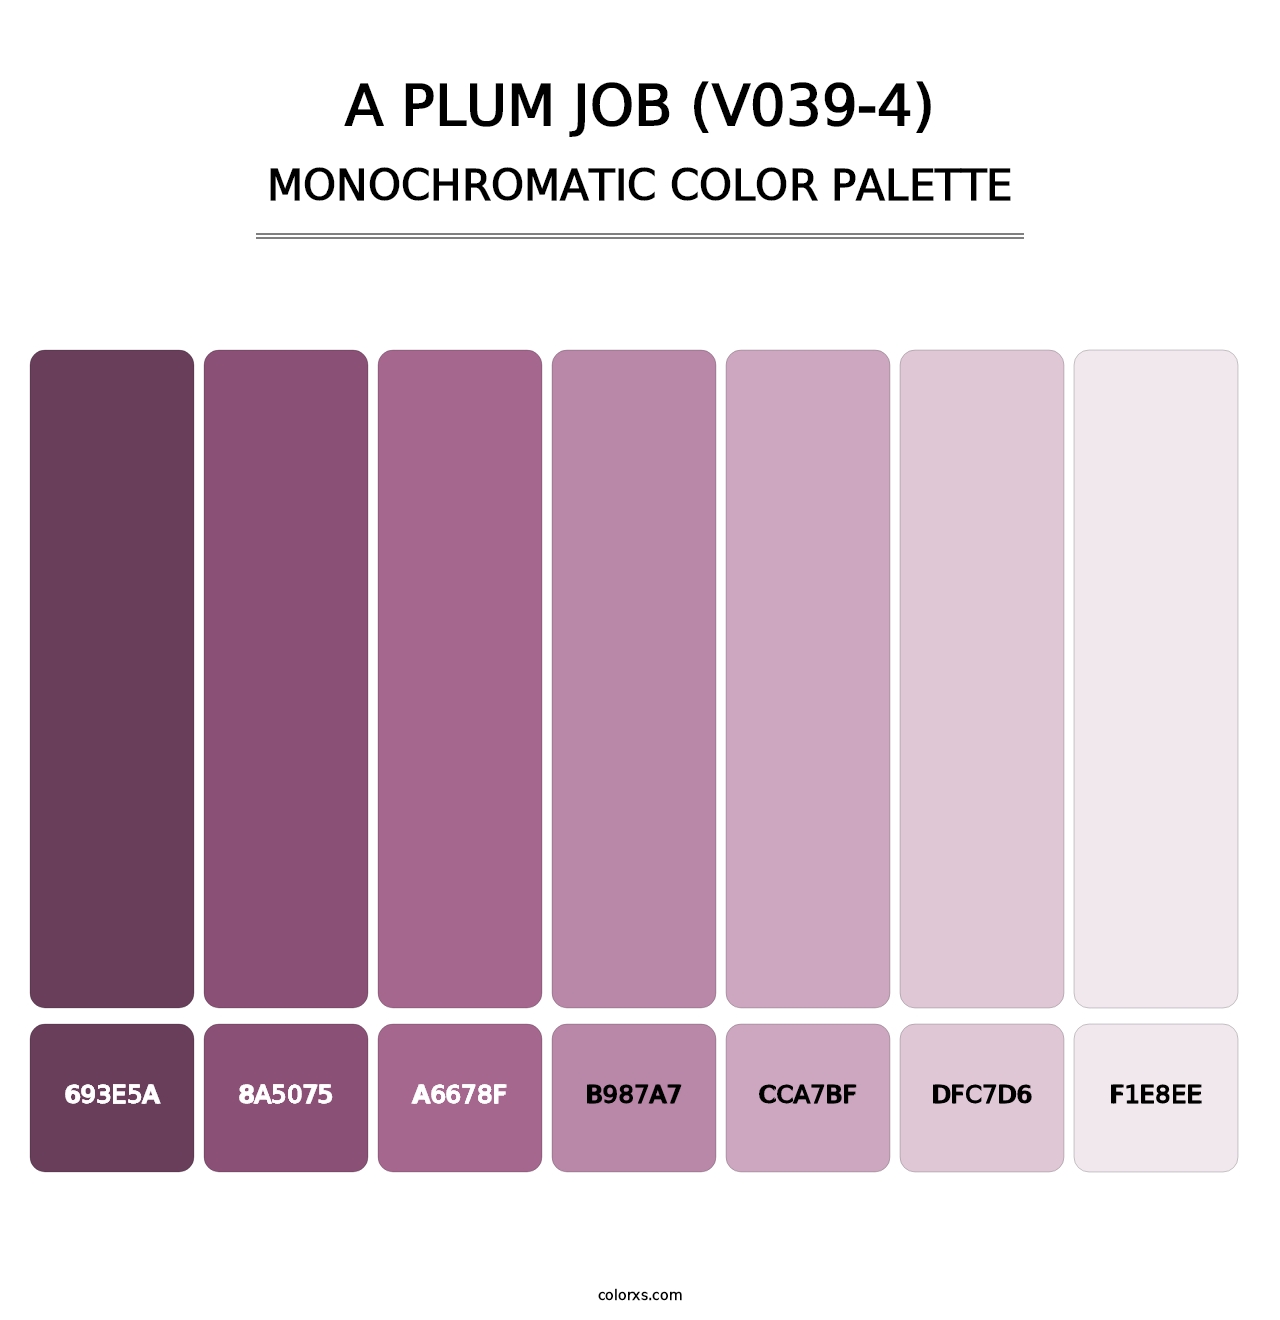 A Plum Job (V039-4) - Monochromatic Color Palette